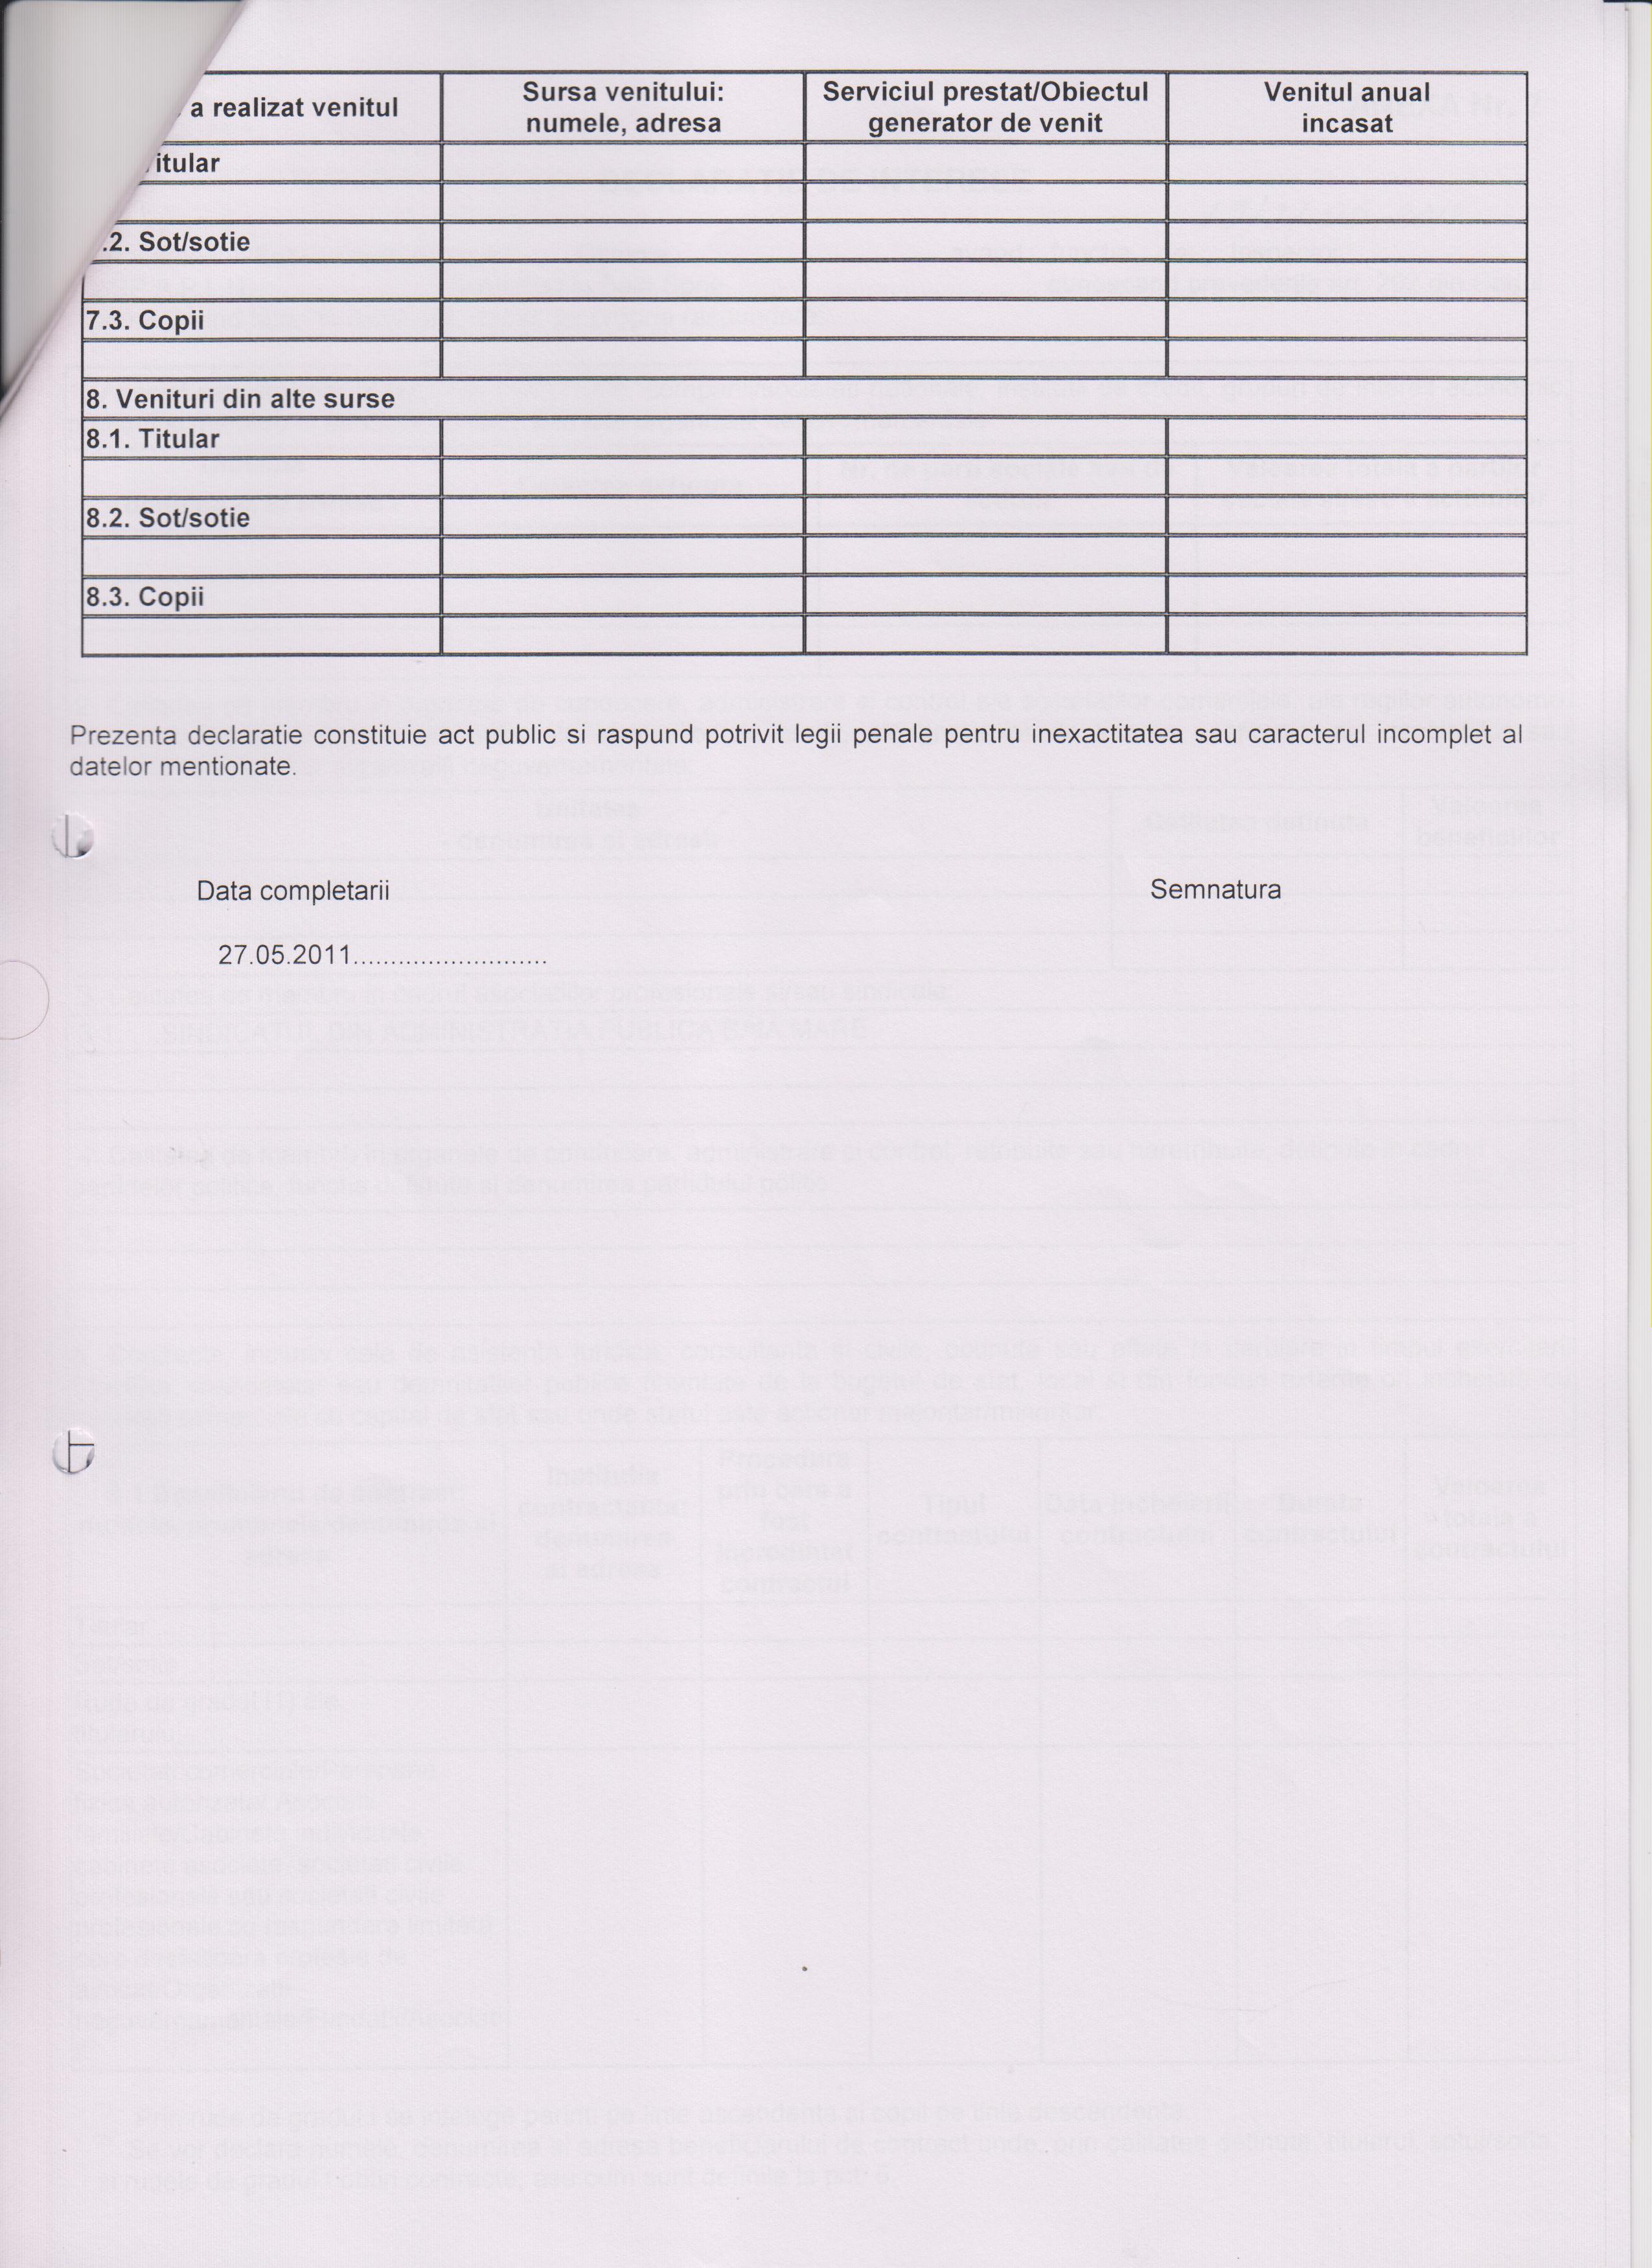 Declaratia de avere si de interese din data 21.09.2011 - pagina 4 din 6